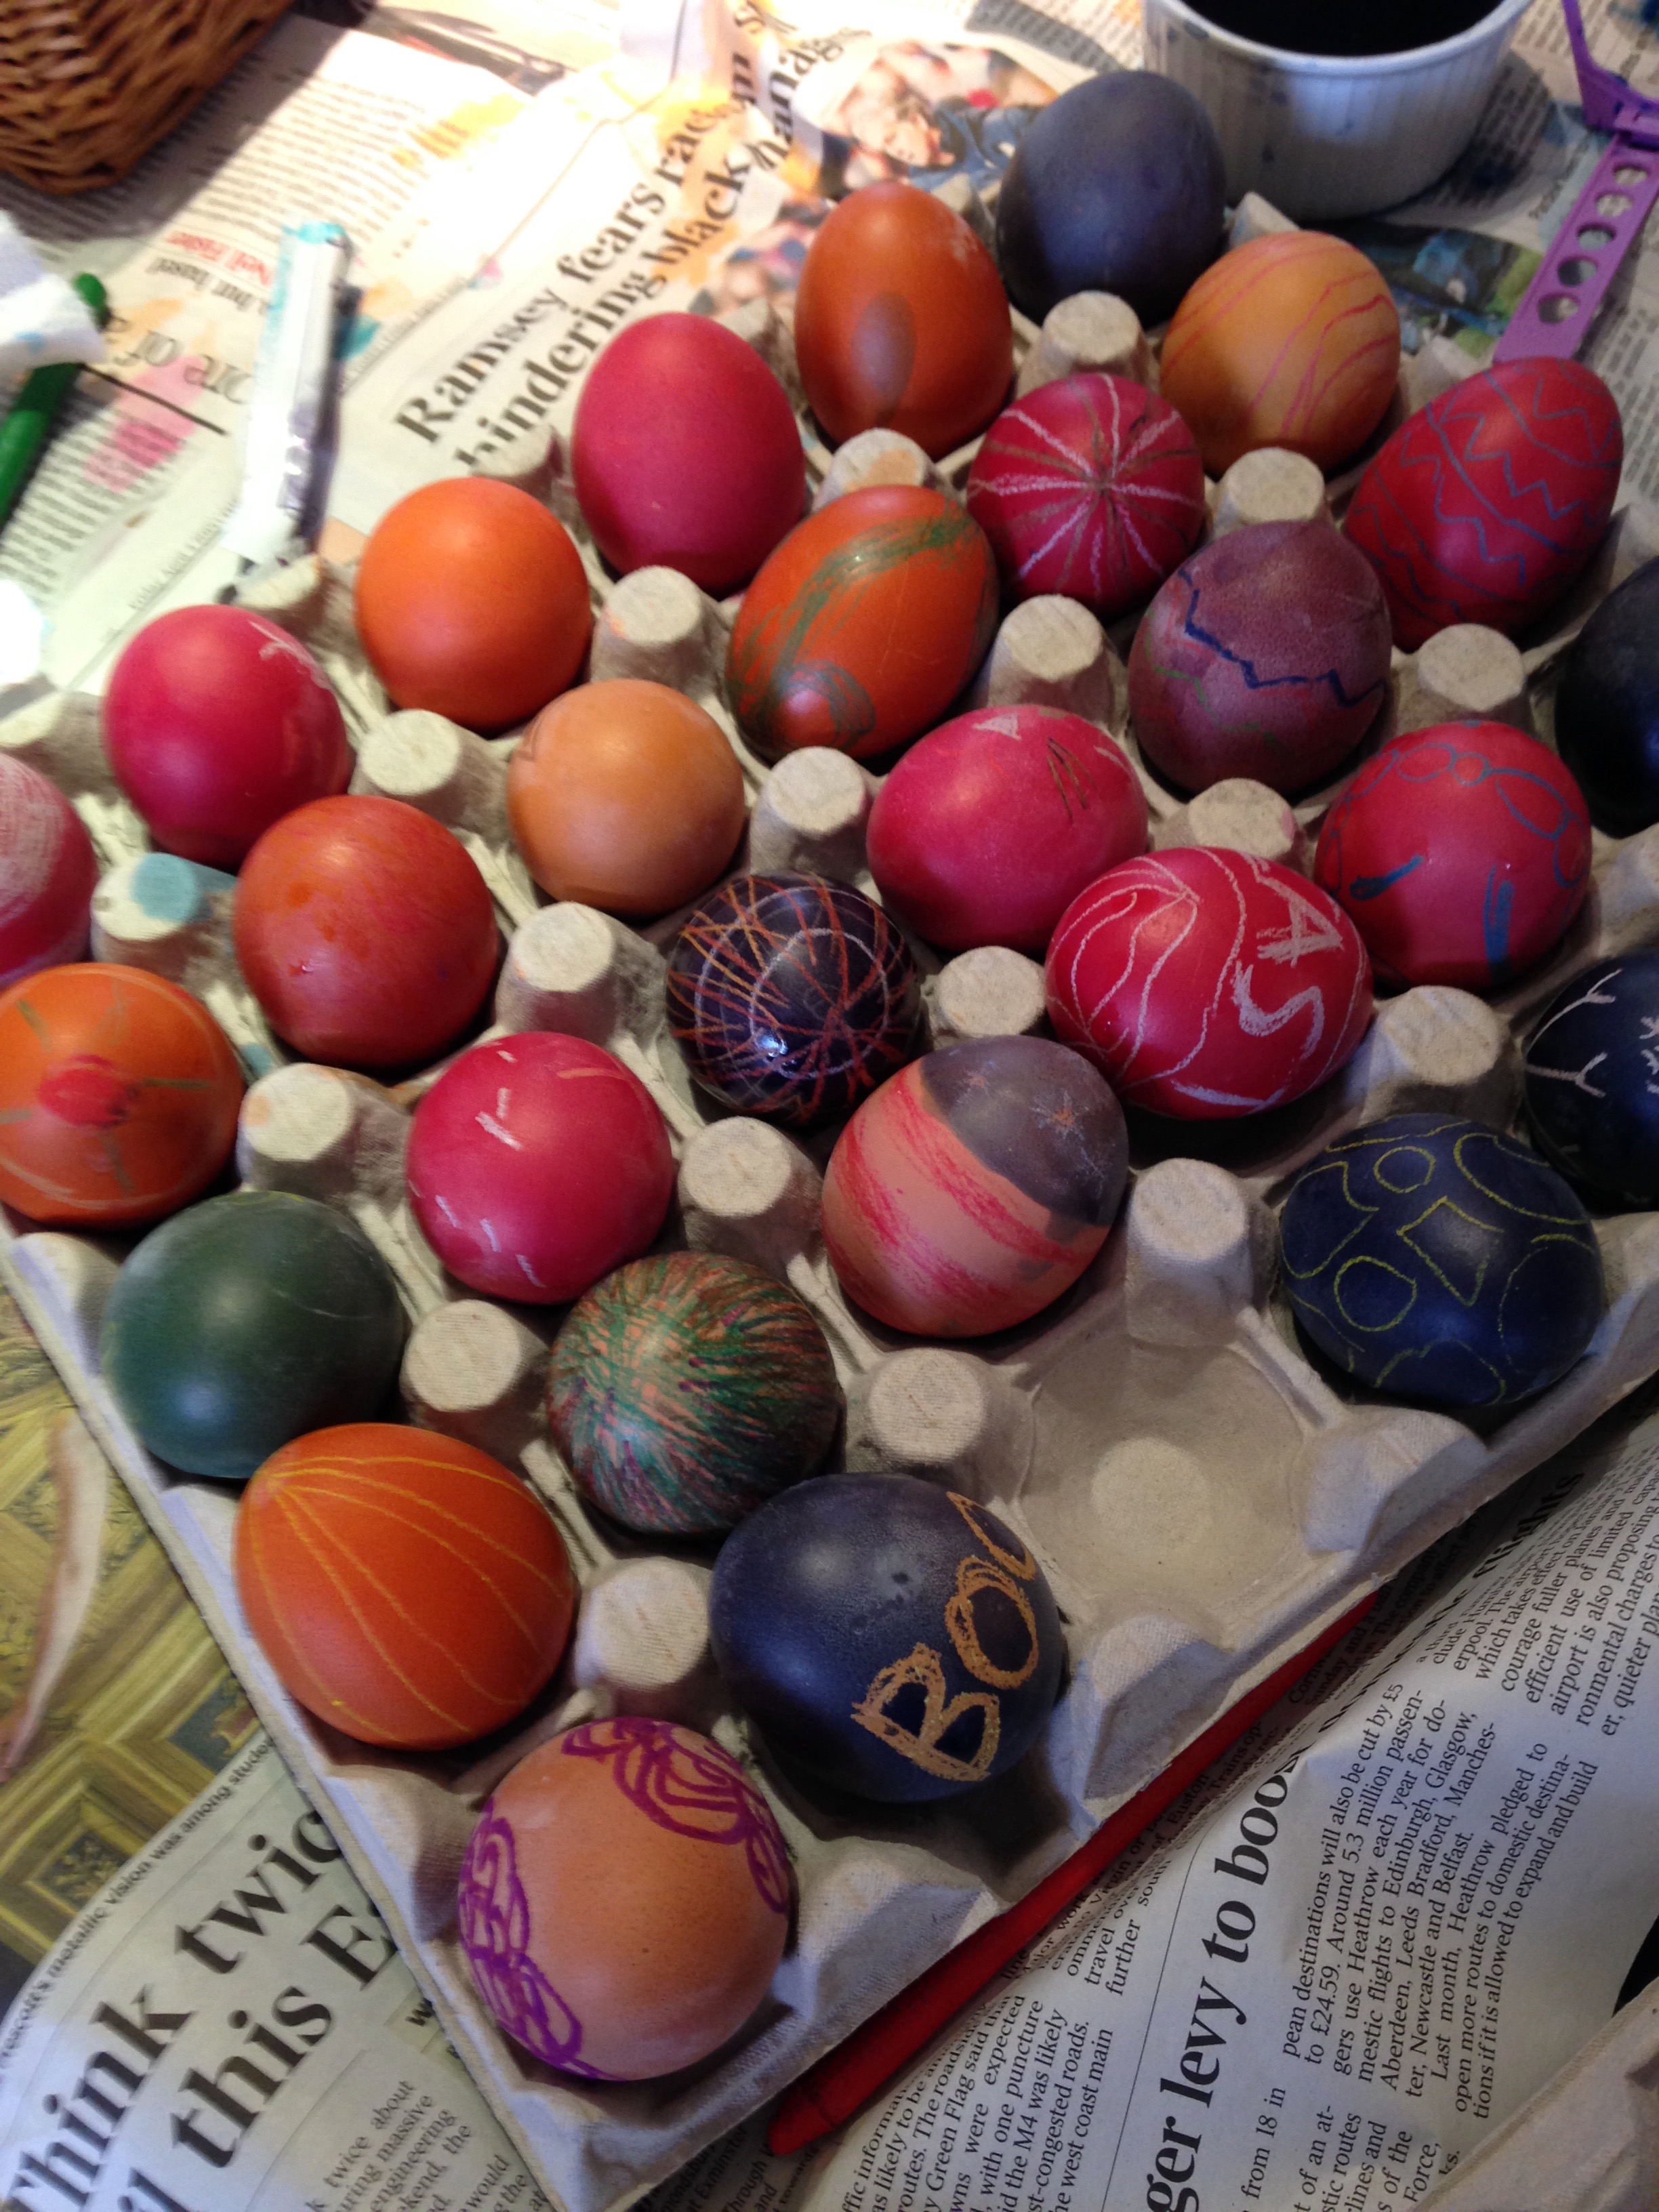 Easter eggs.jpg